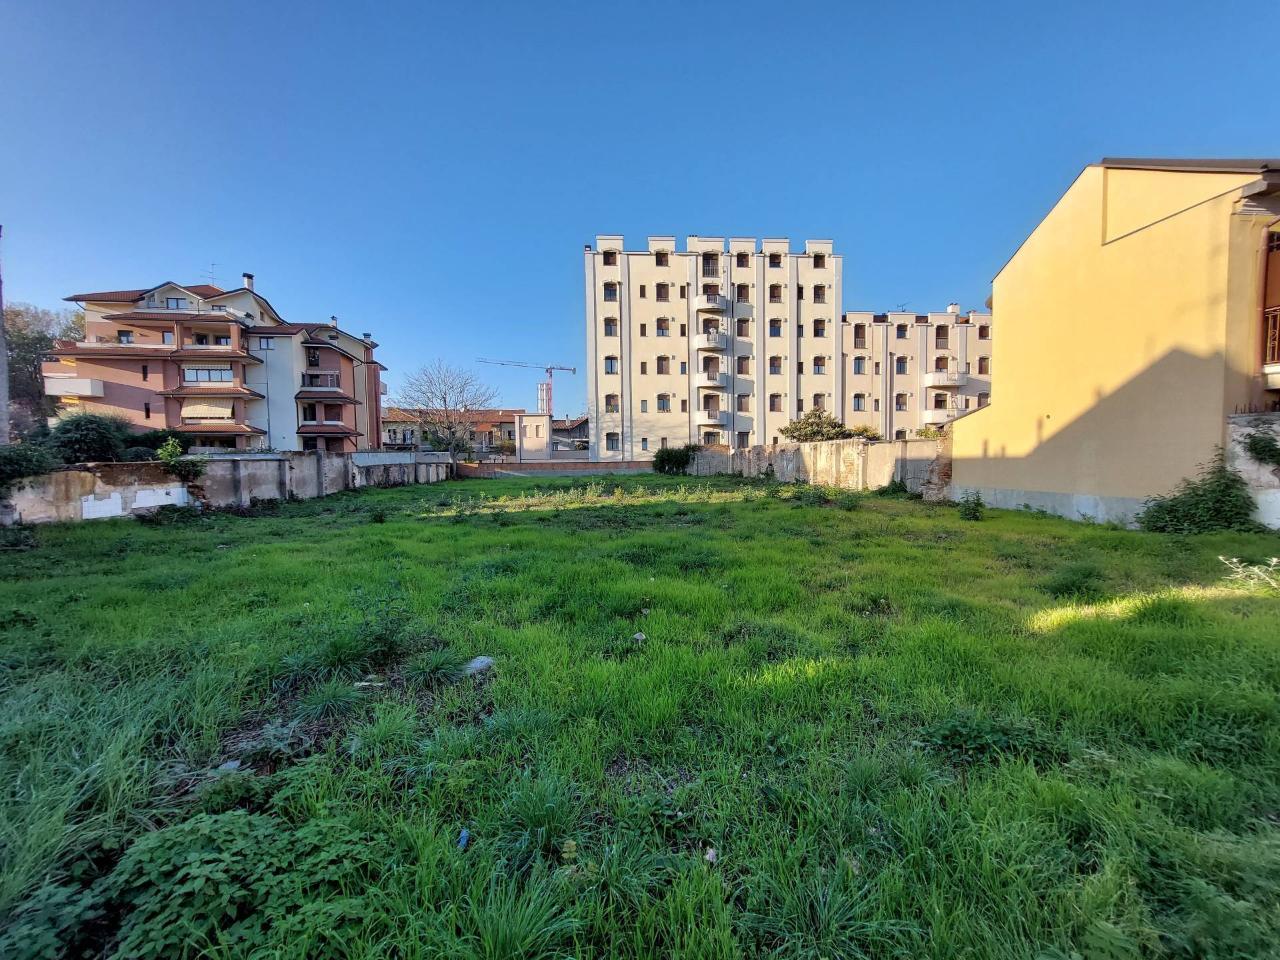 Terreno edificabile in vendita a Castellanza